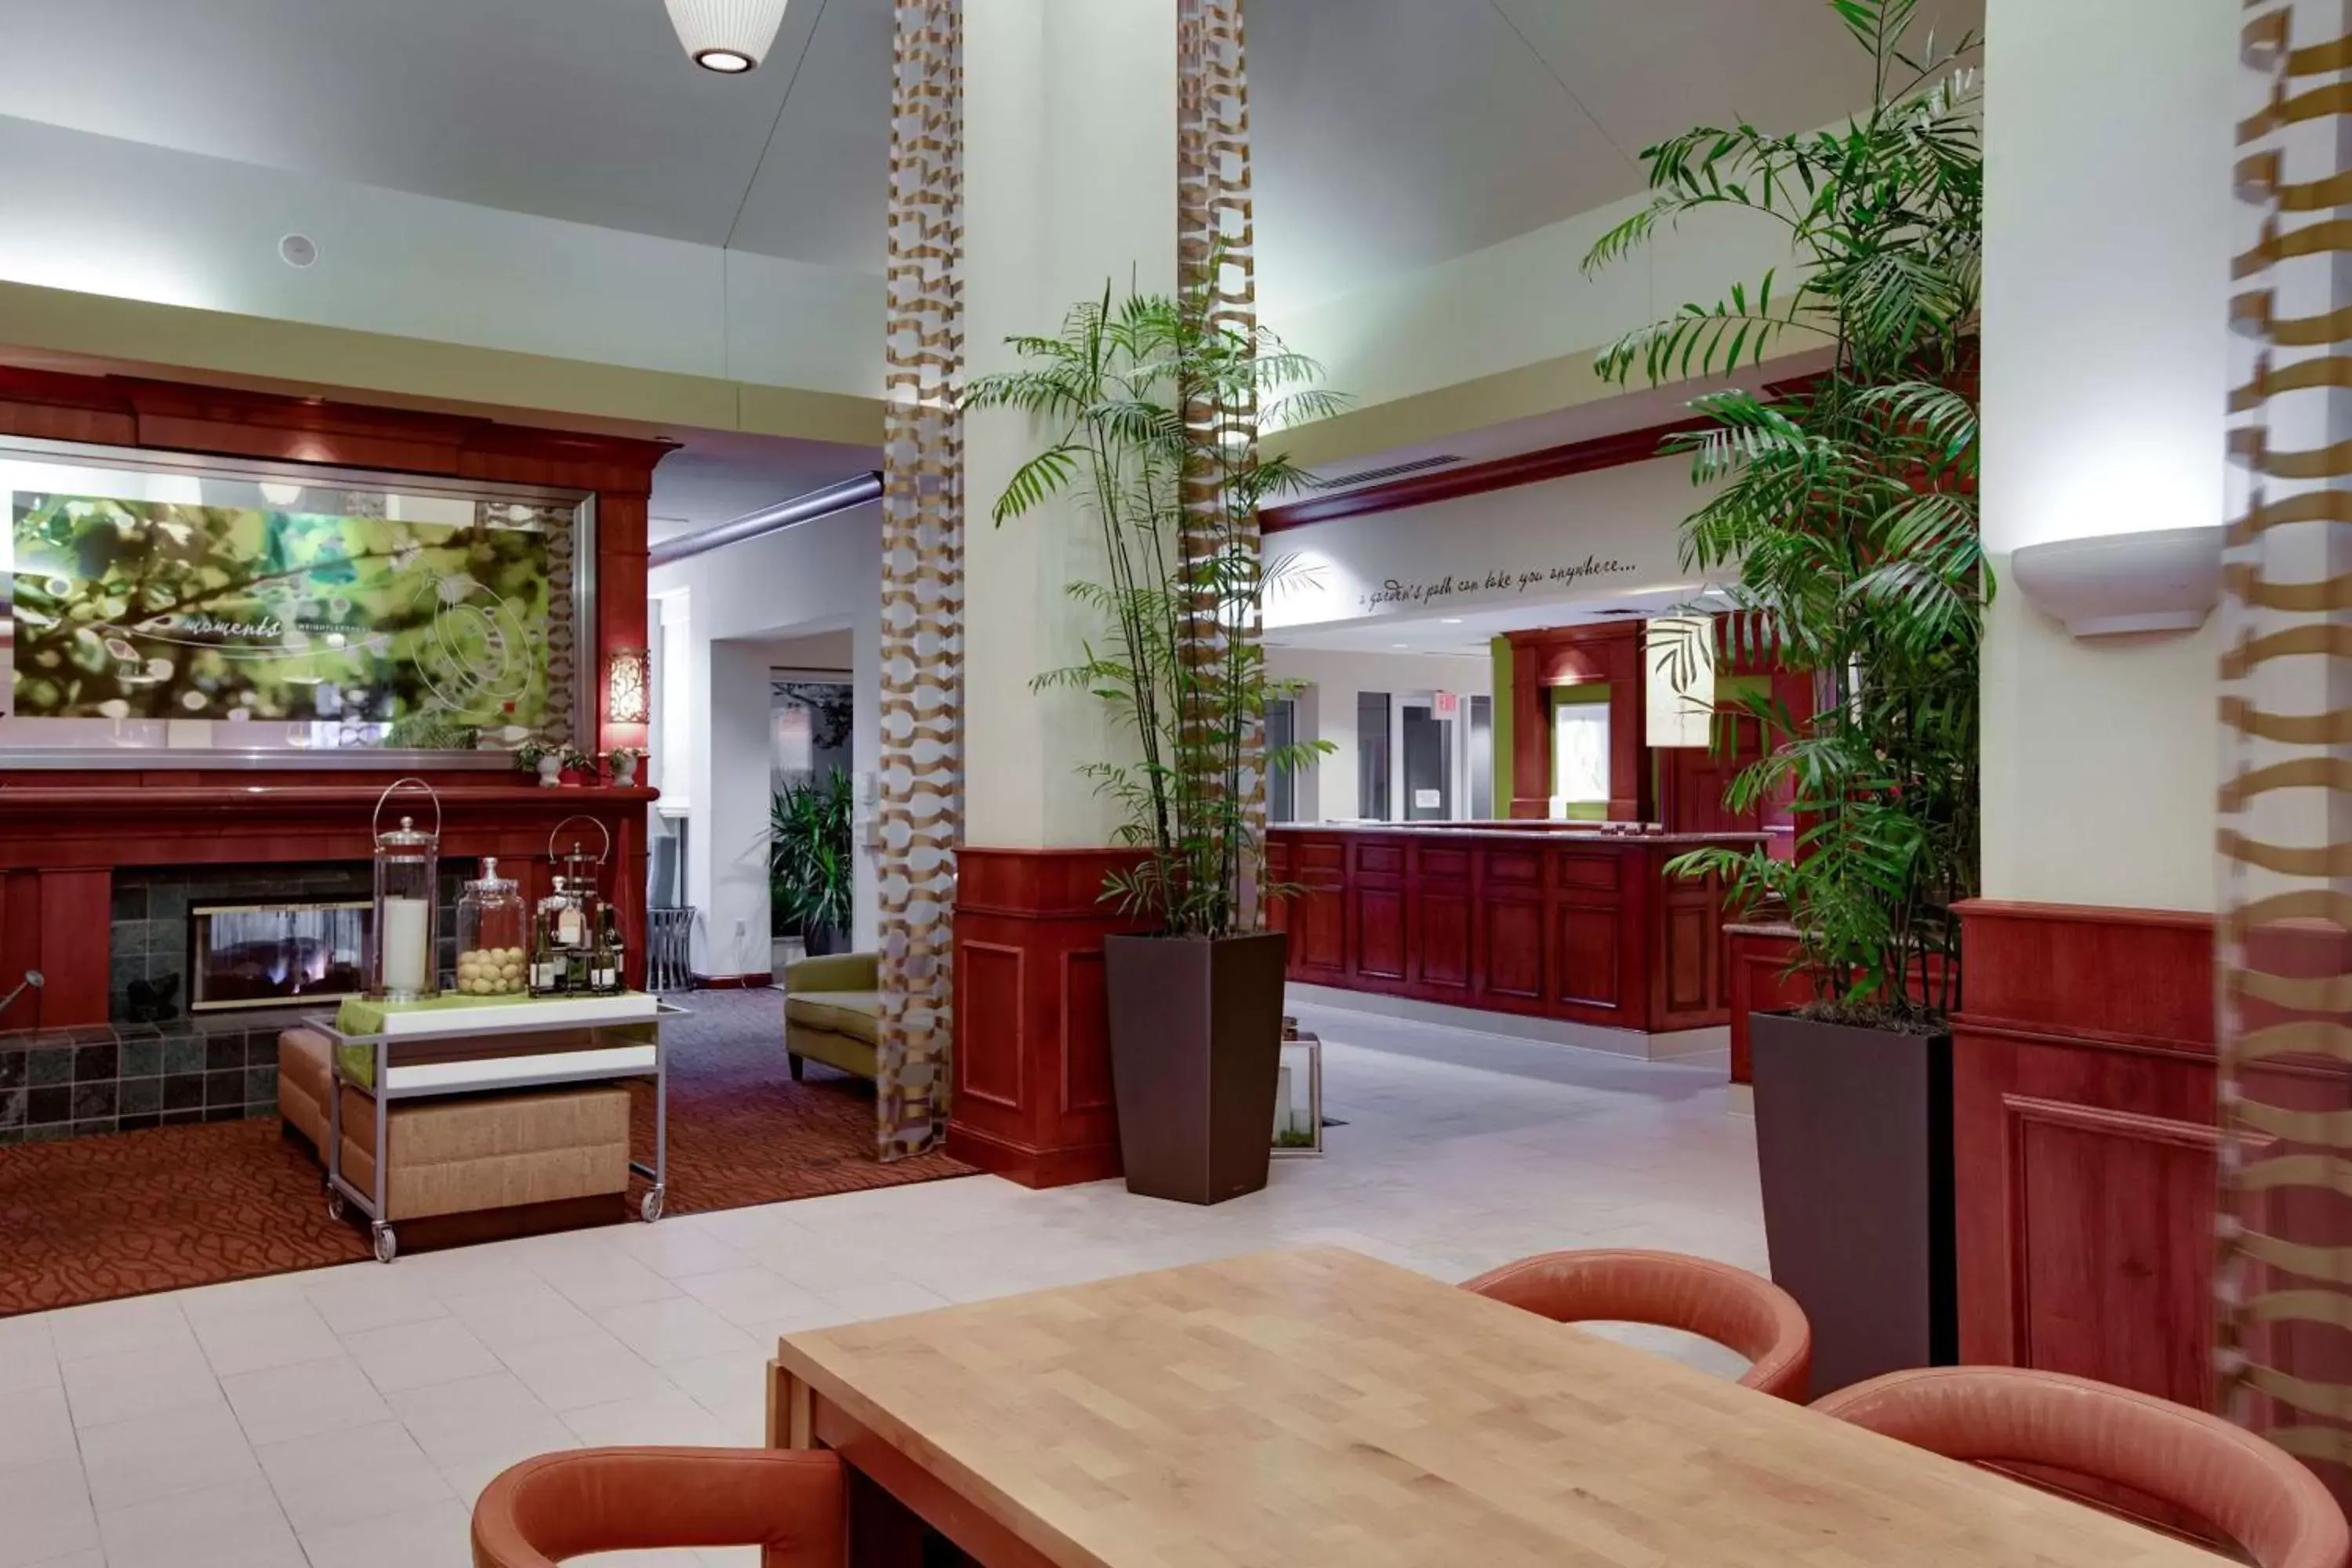 Lobby or reception, Lobby/Reception in Hilton Garden Inn Oklahoma City Airport